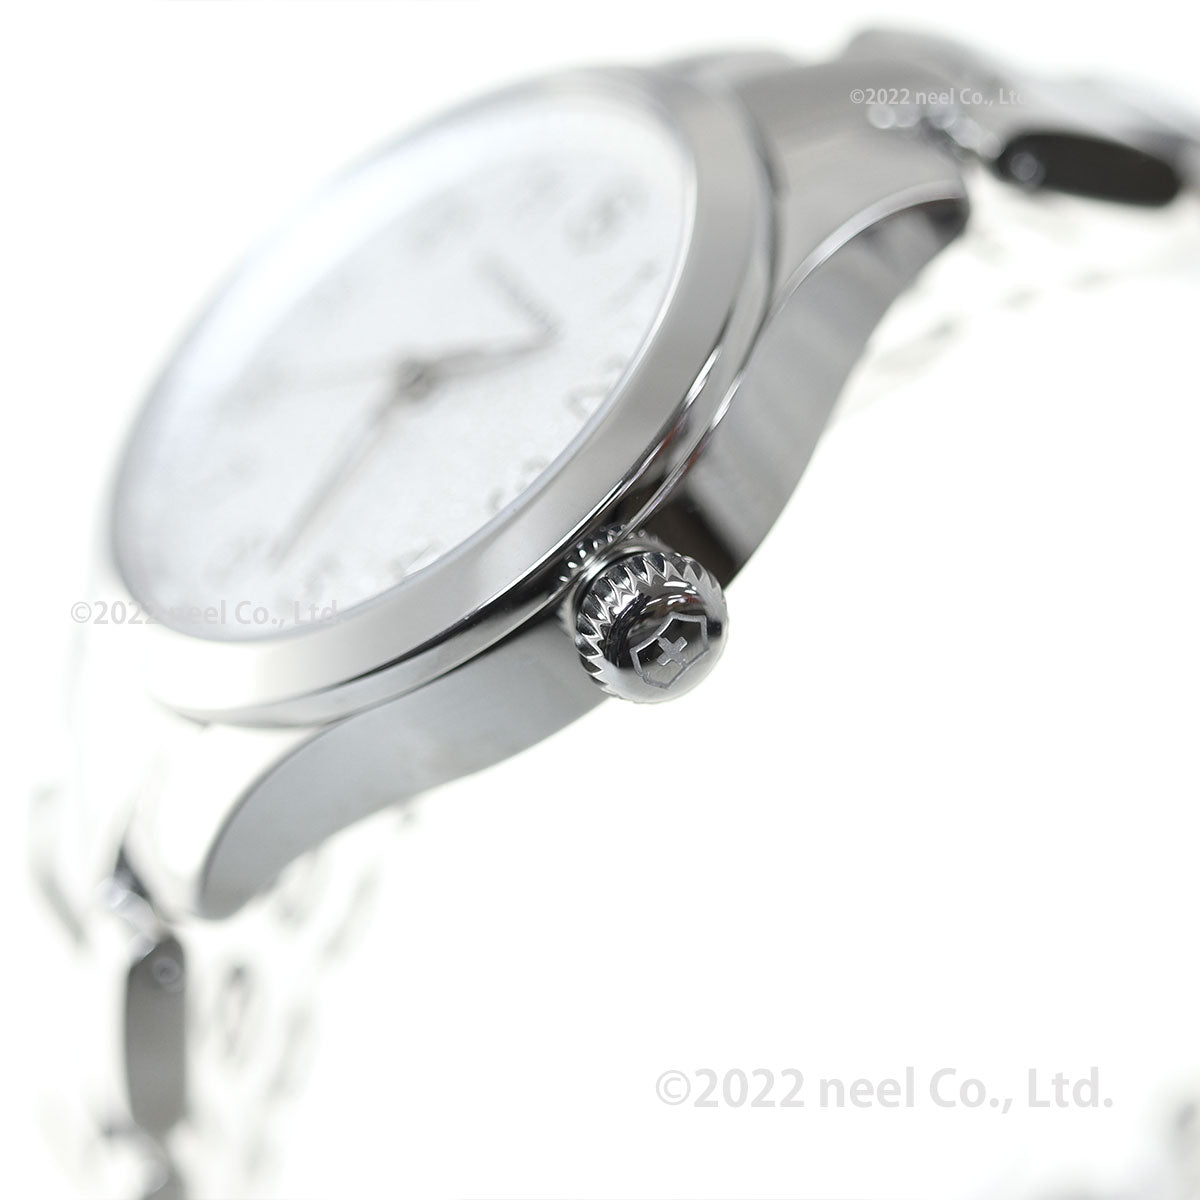 ビクトリノックス 時計 レディース アライアンス VICTORINOX 腕時計 Alliance XS 241840